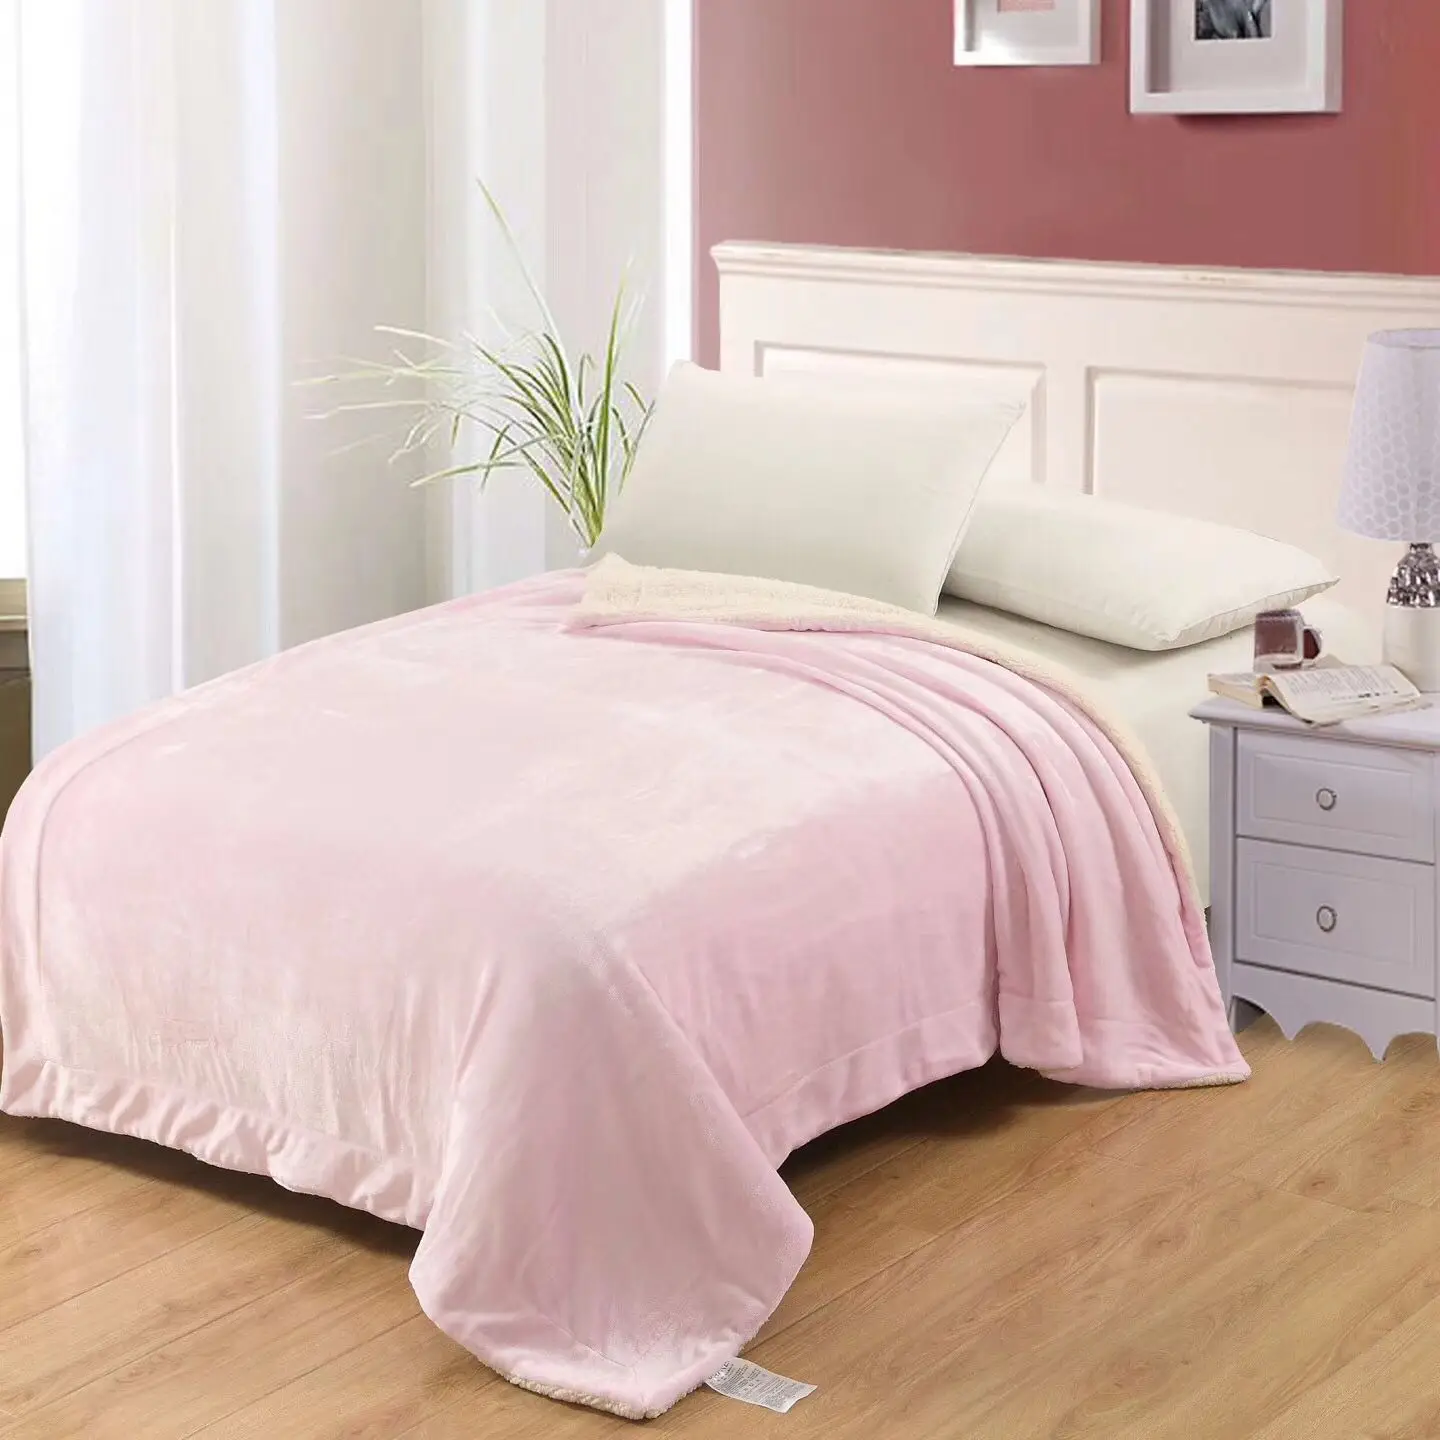 200 см супер мягкое двойное фланелевое одеяло из овчины, теплое удобное одноцветное Коралловое бархатное одеяло, диван, постельные принадлежности, домашний текстиль - Цвет: F